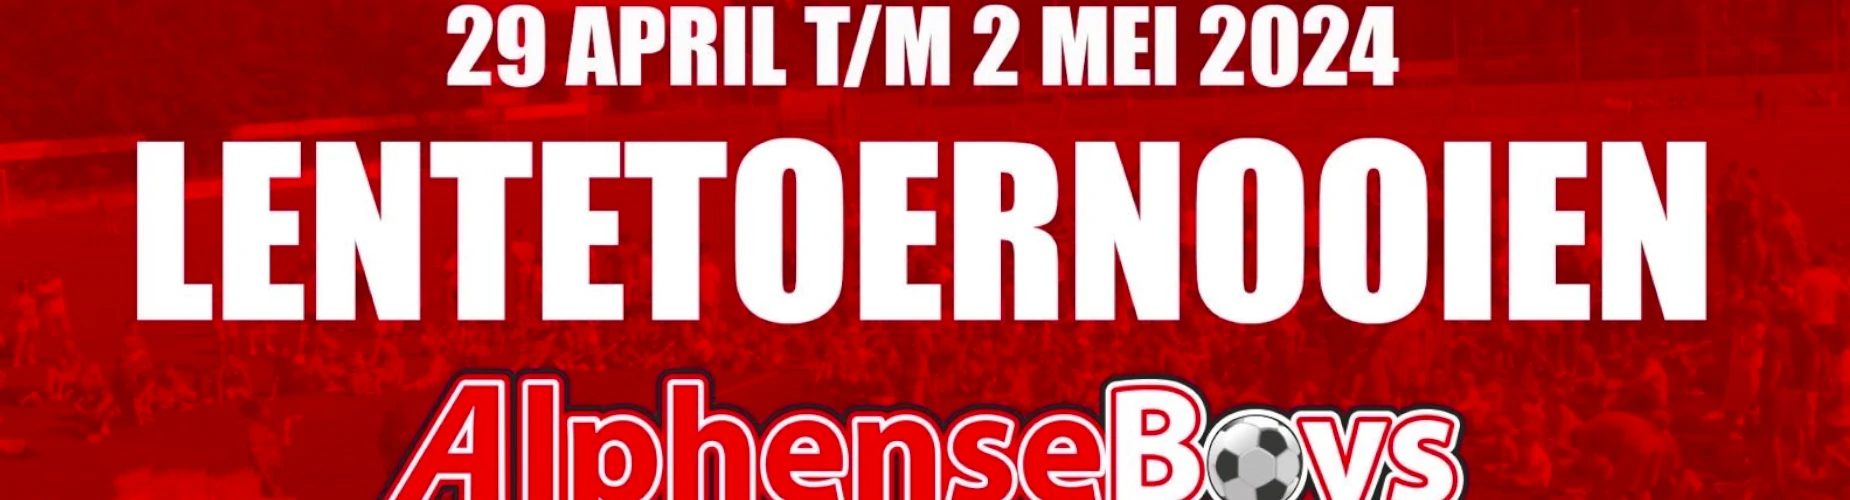 Banner - Lentetoernooi Alphense Boys - Alphense Boys - Alphen aan den Rijn